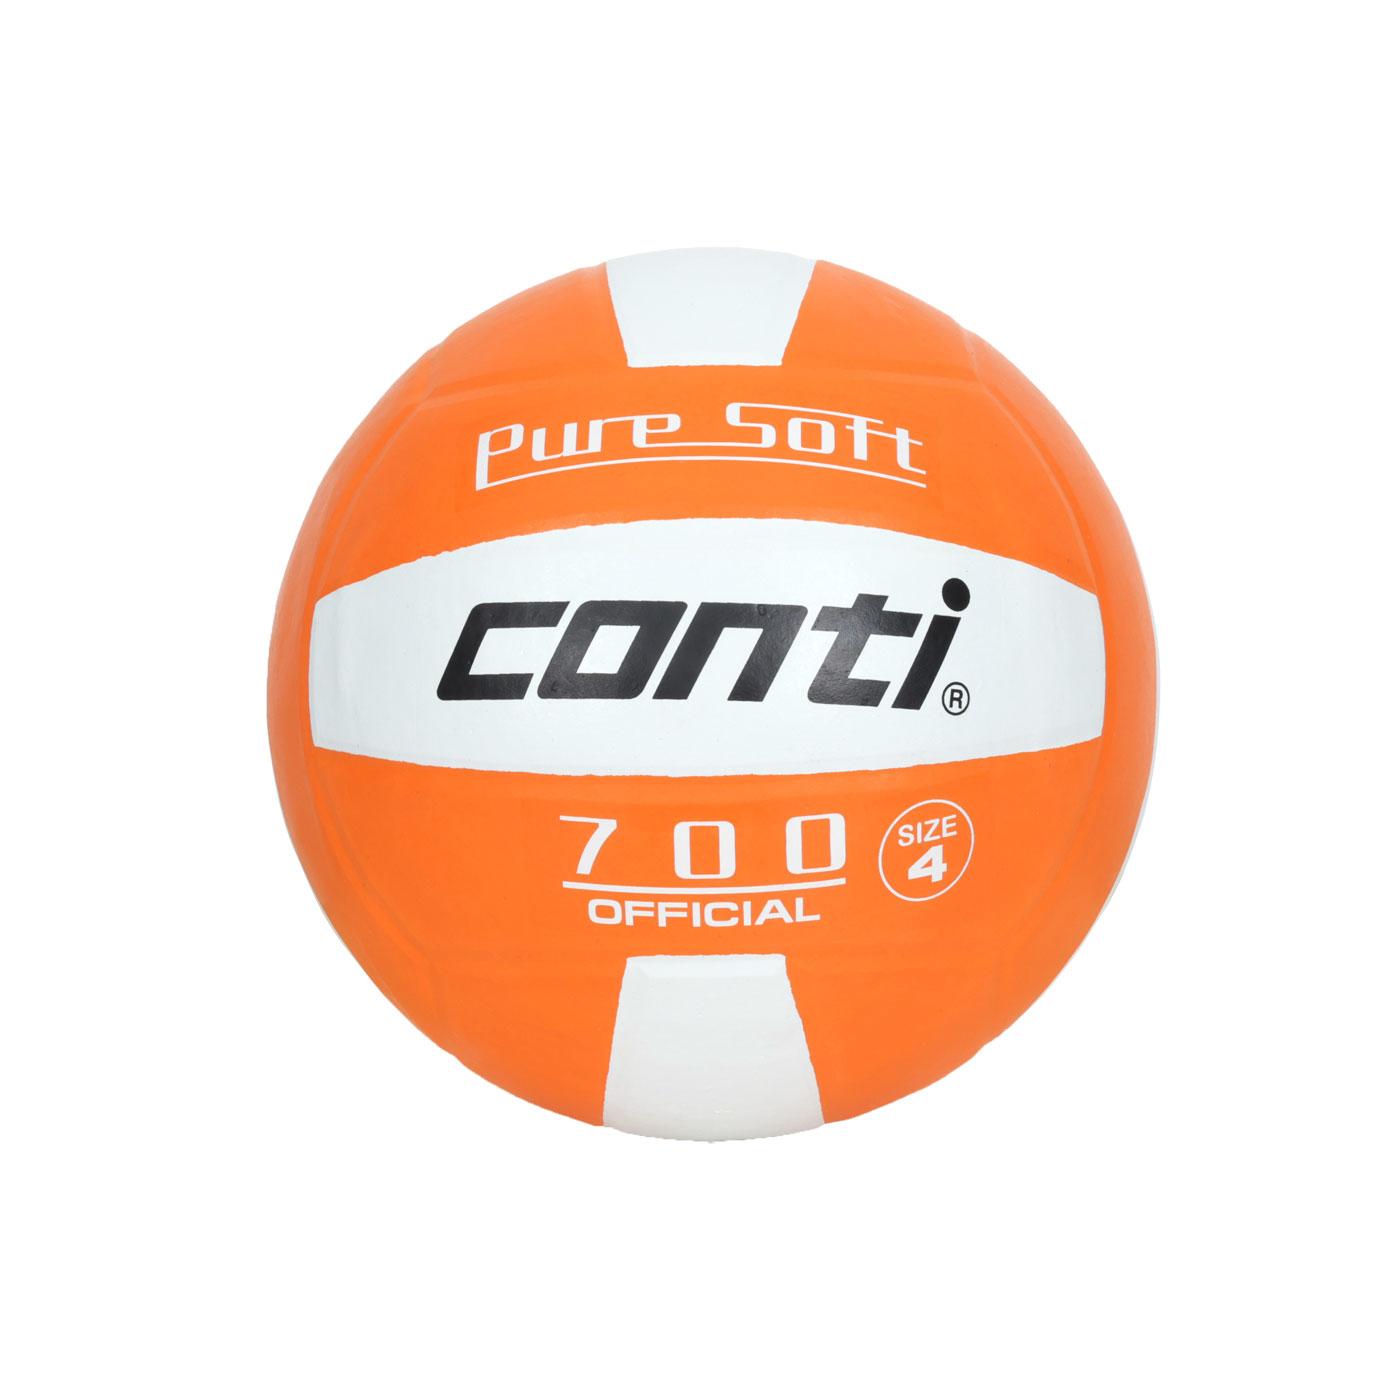 詠冠conti 4號超軟橡膠排球-雙色系列 CONTI V700-4-W0 - 橘白